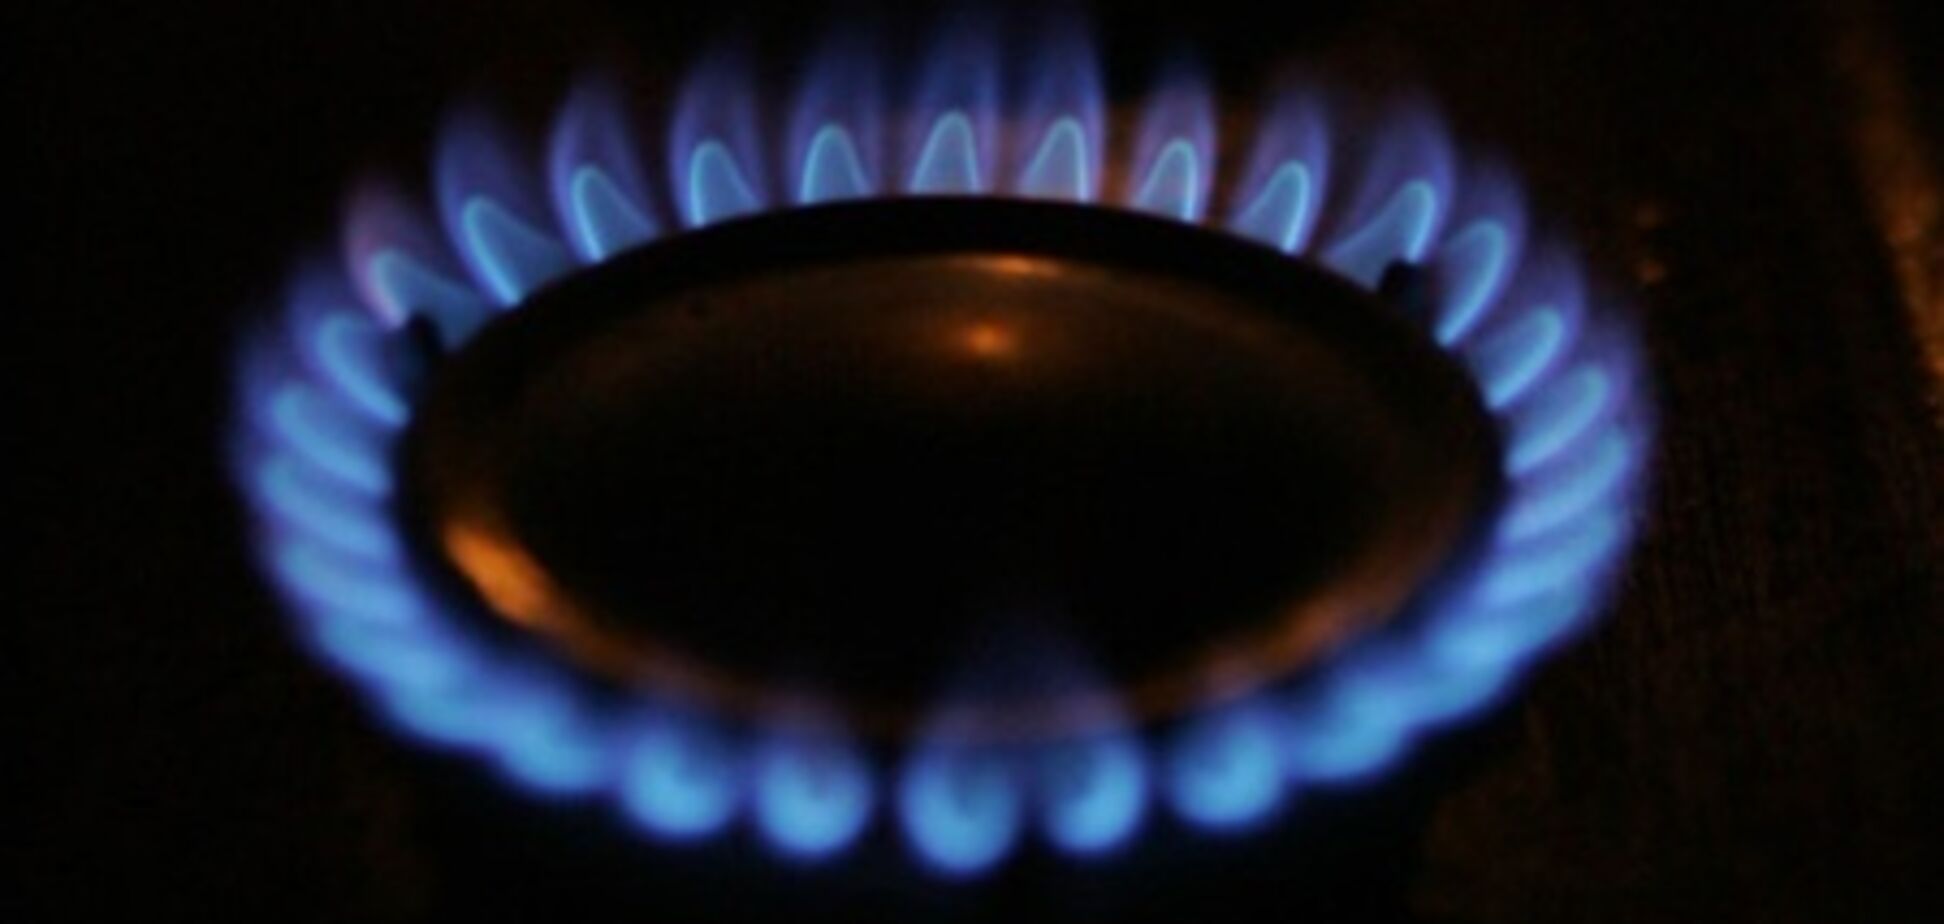 НКРЭ  решила не изменять предельную цену на газ